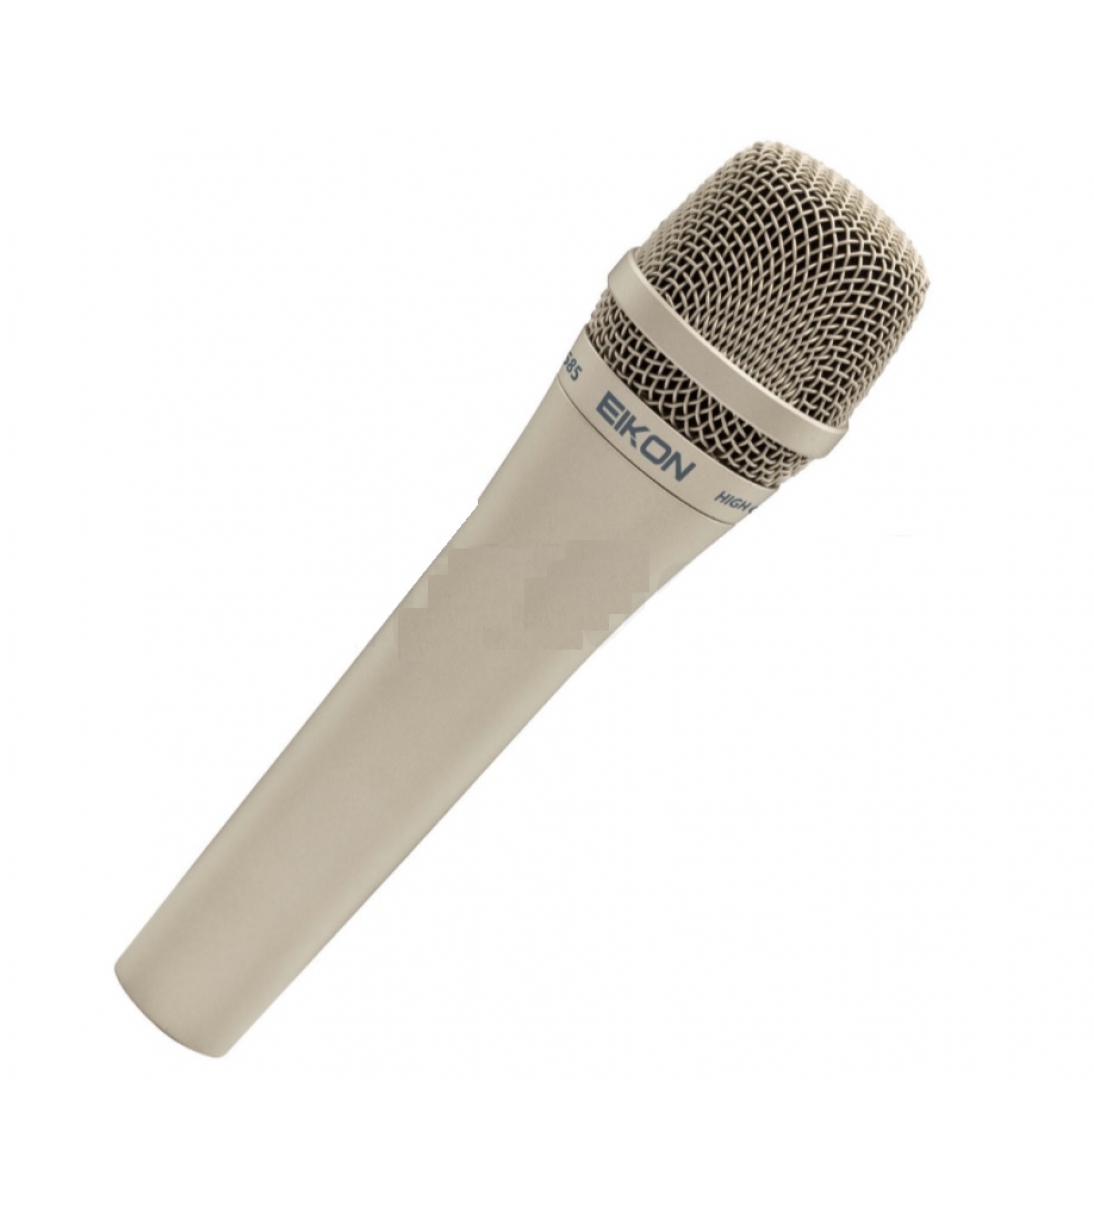 DM585 Un microfono indicato per applicazioni vocali particolarmente resistente al feed back